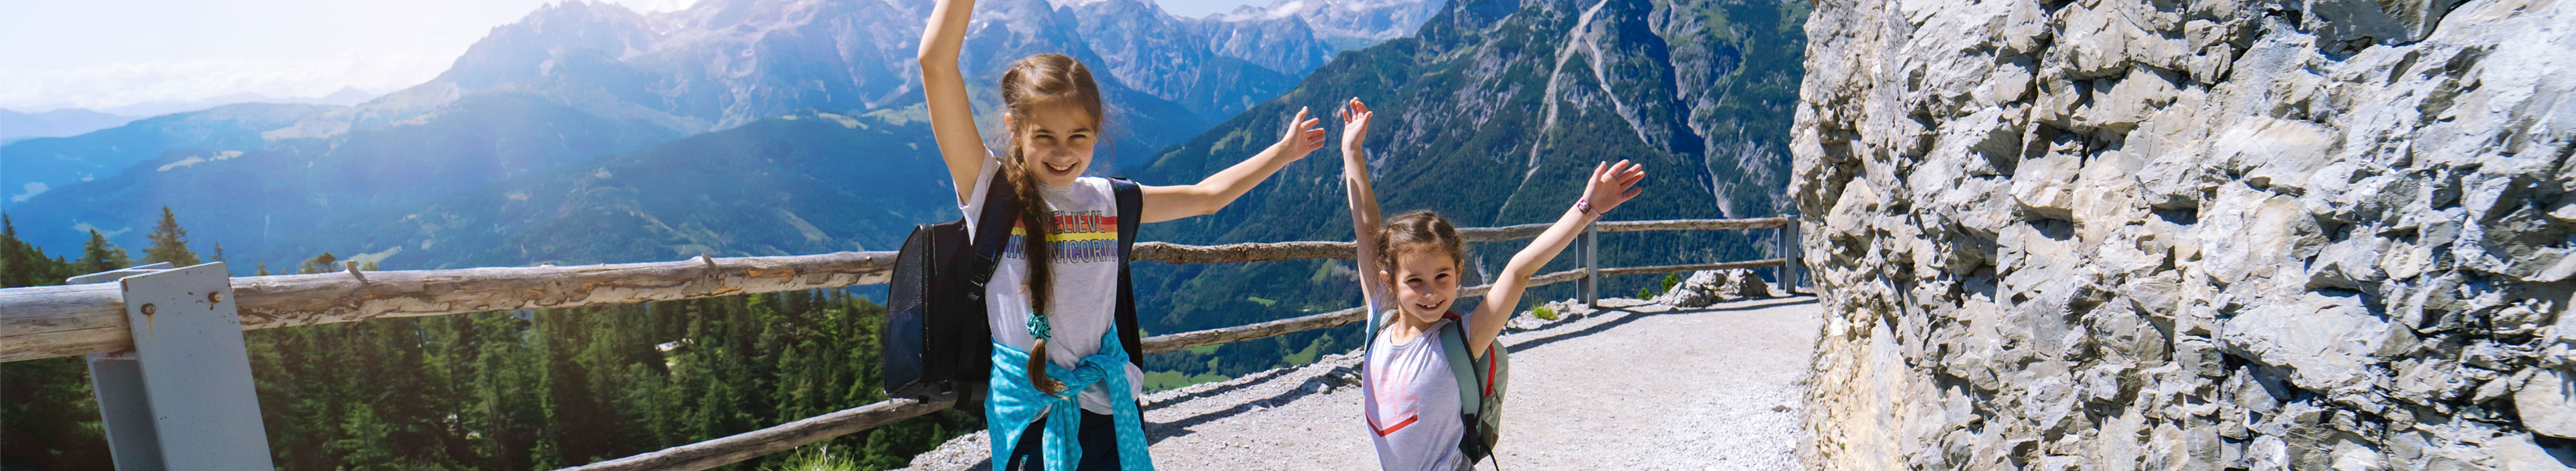 Kinder wandern an einem schönen Sommertag in den österreichischen Alpen, ruhen sich auf einem Felsen aus und bewundern die herrliche Aussicht auf die Berggipfel.